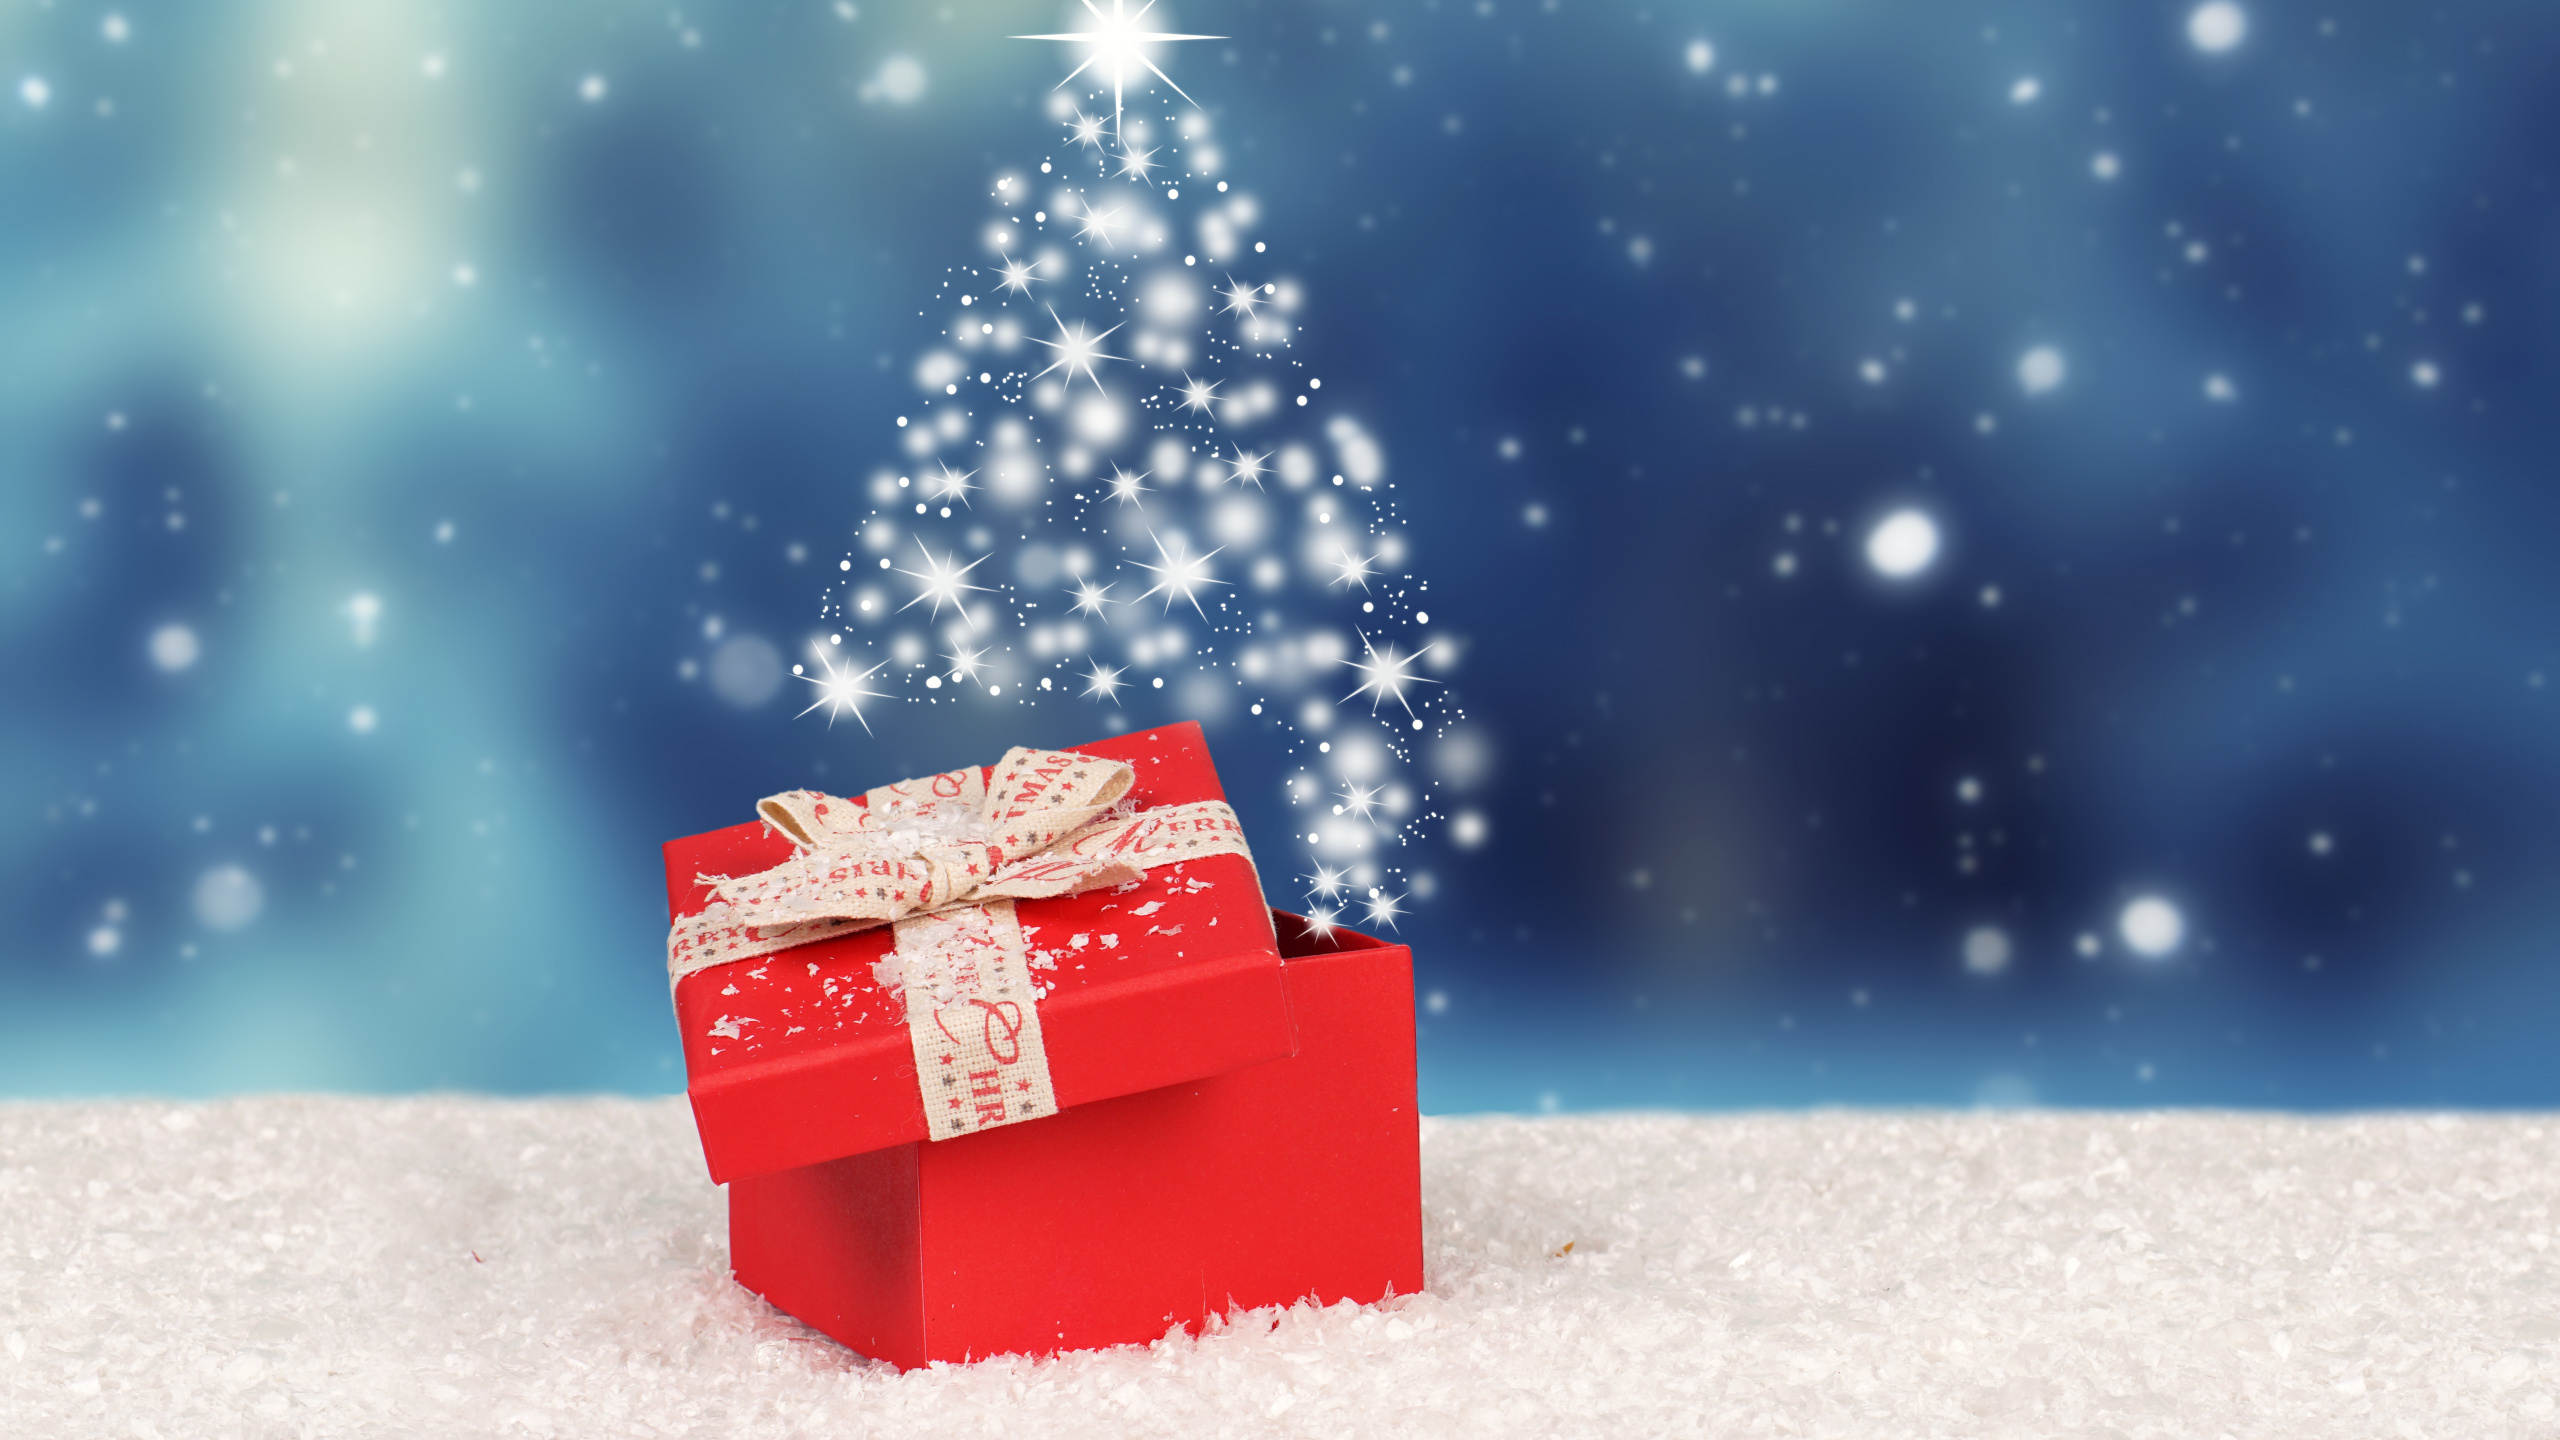 圣诞节那天, 冬天, 圣诞节, 圣诞树, 圣诞前夕 壁纸 2560x1440 允许